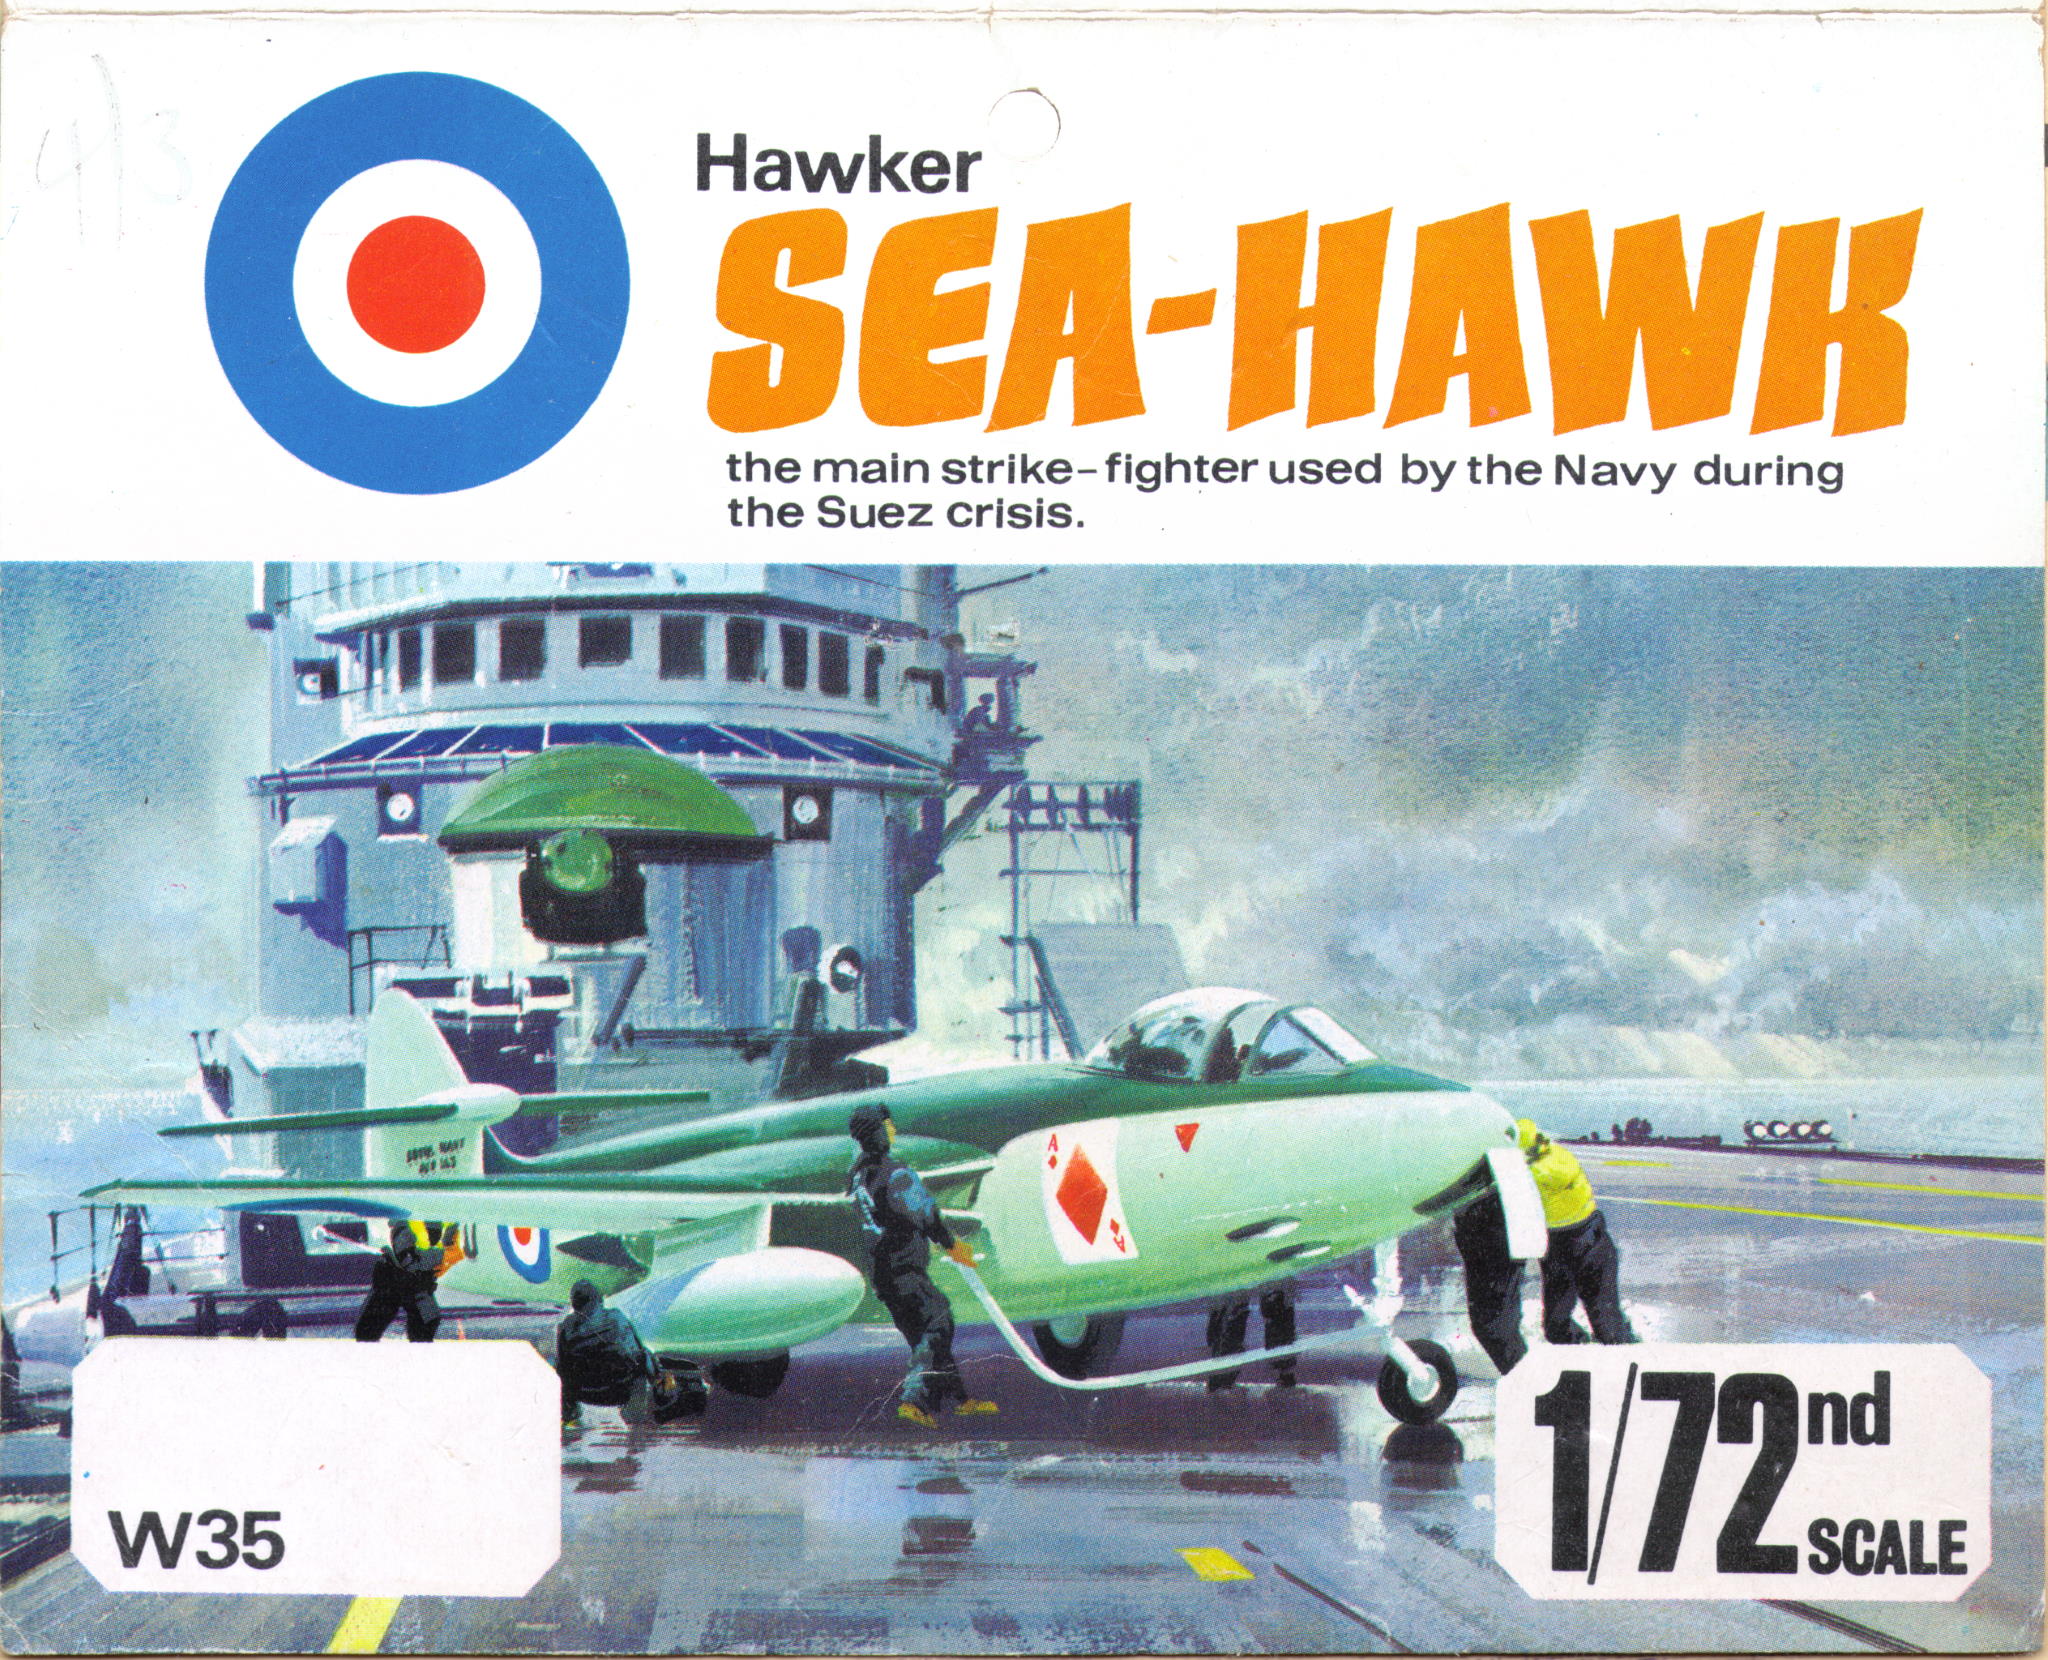 Лепесток W35 Hawker Sea Hawk the main strike fighter для пакета без названия фирмы производителя